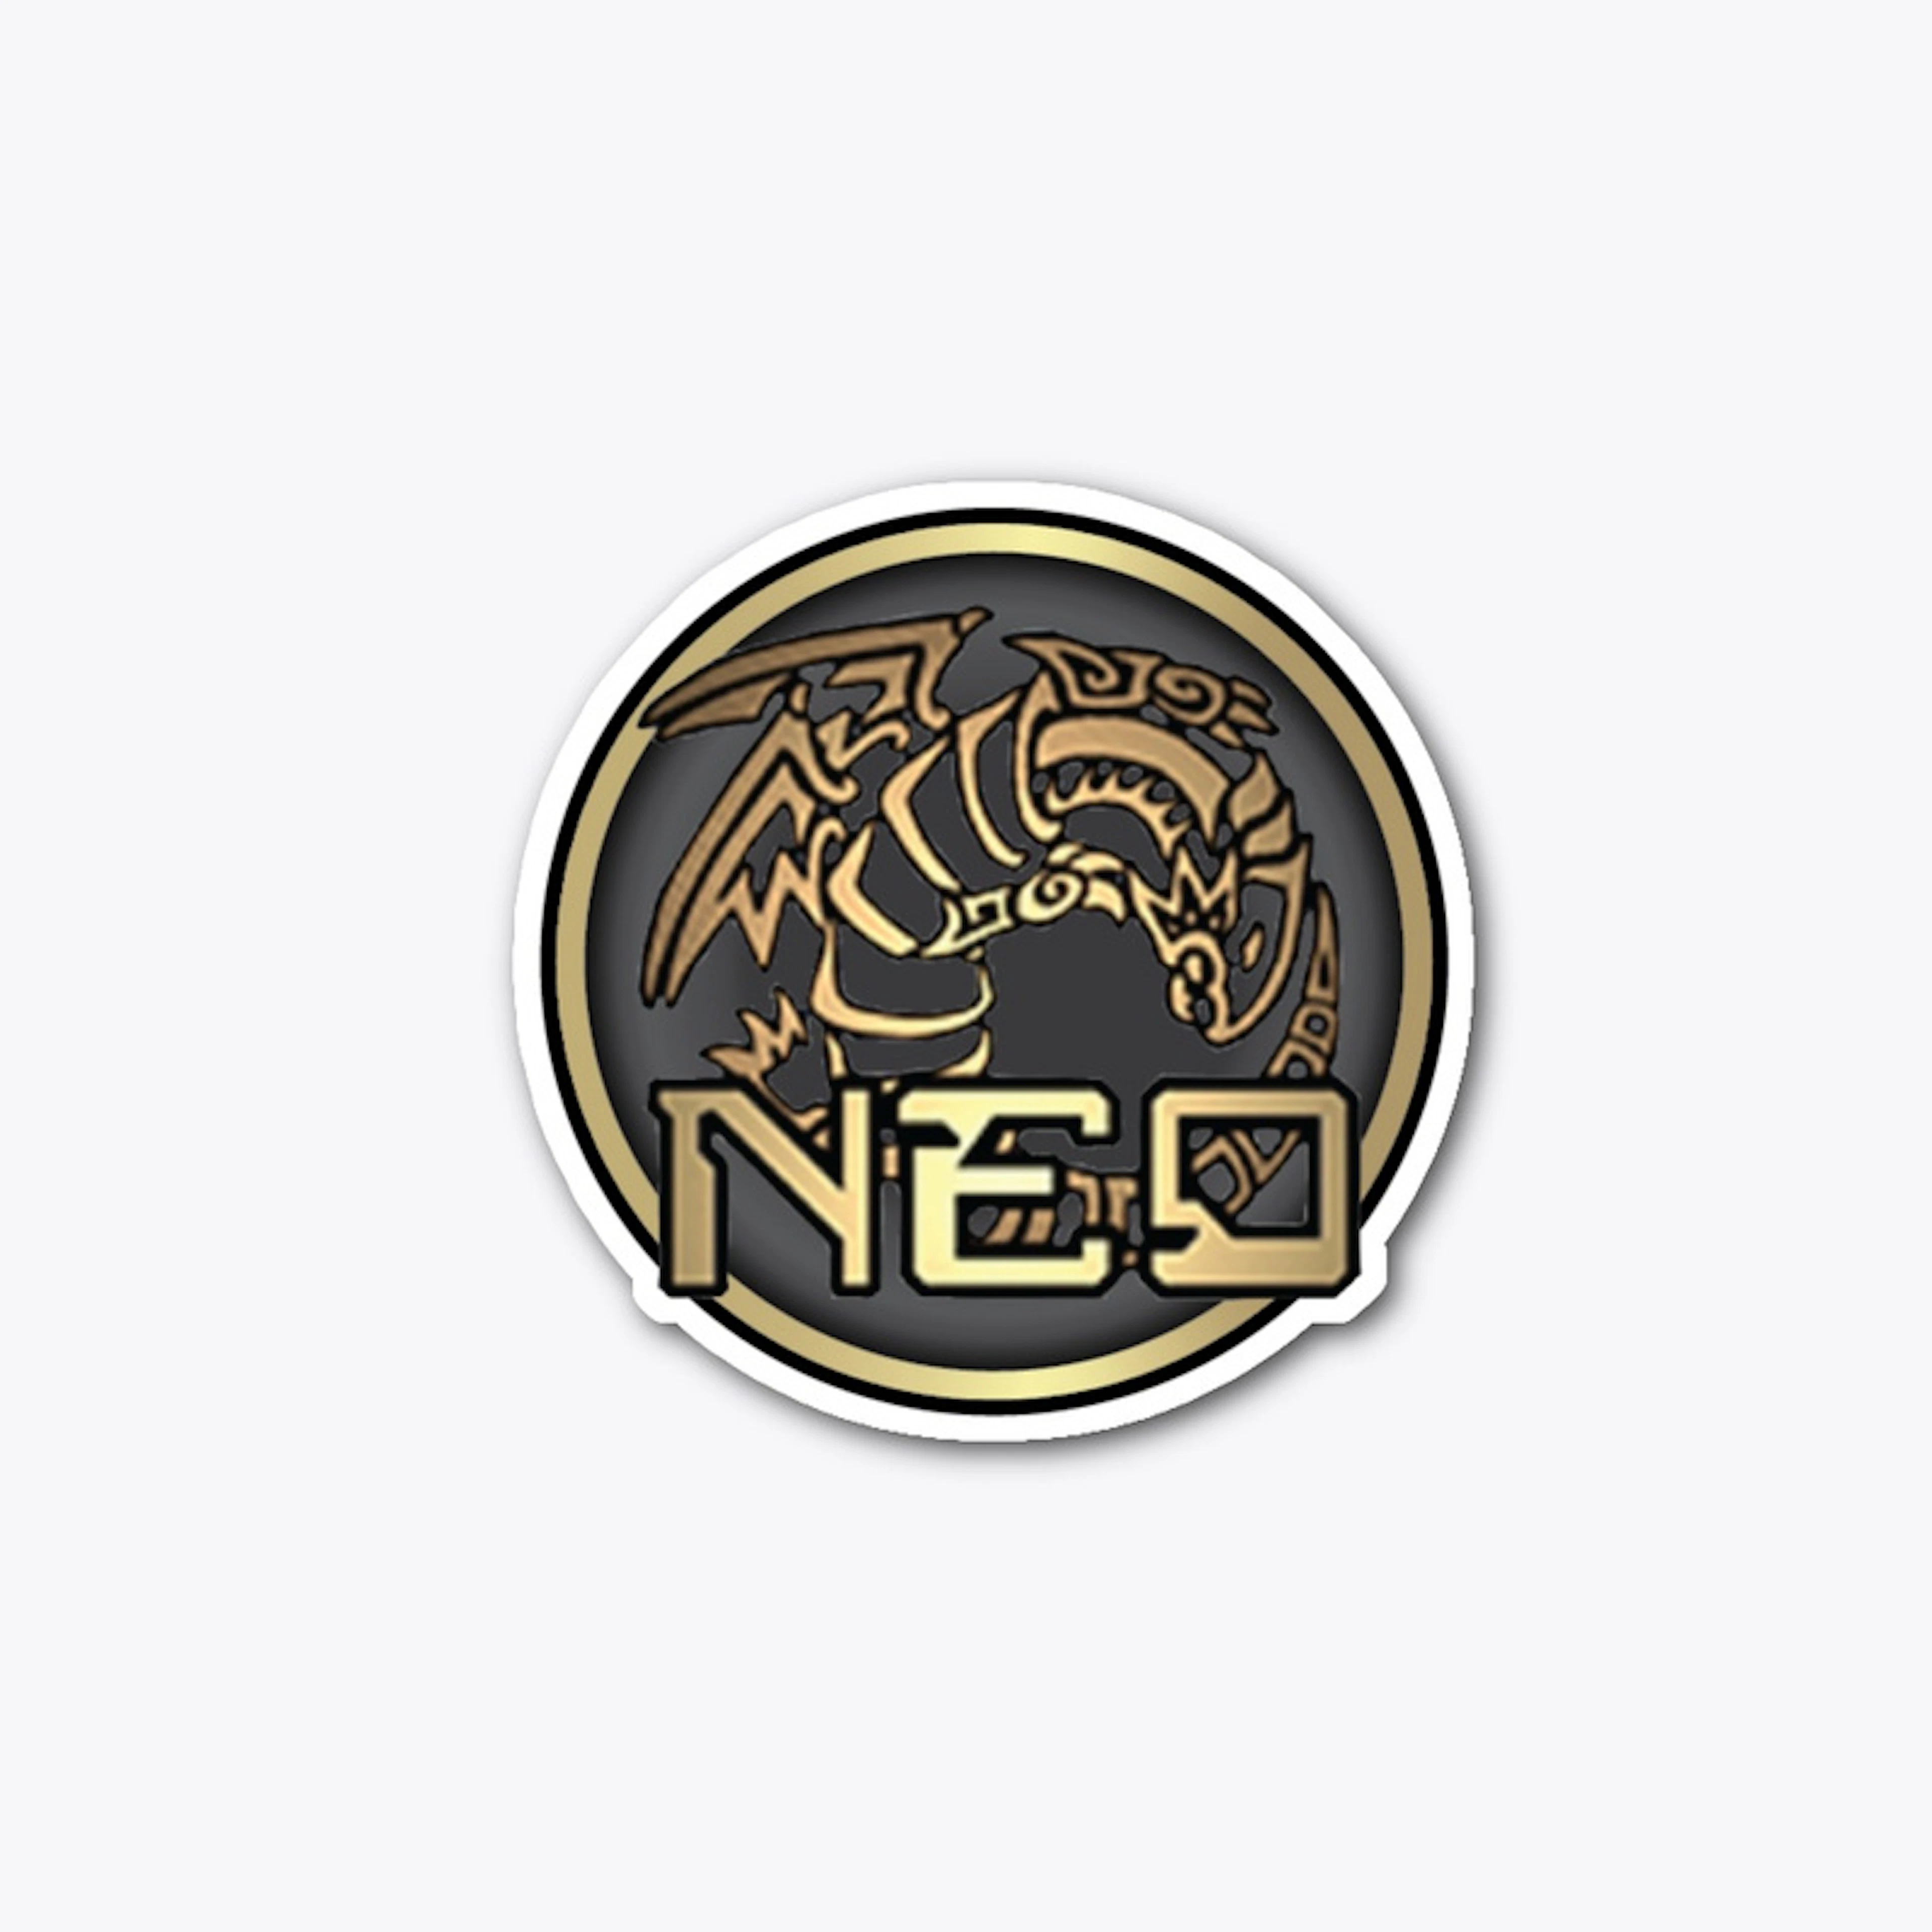 NEO logo merchandise